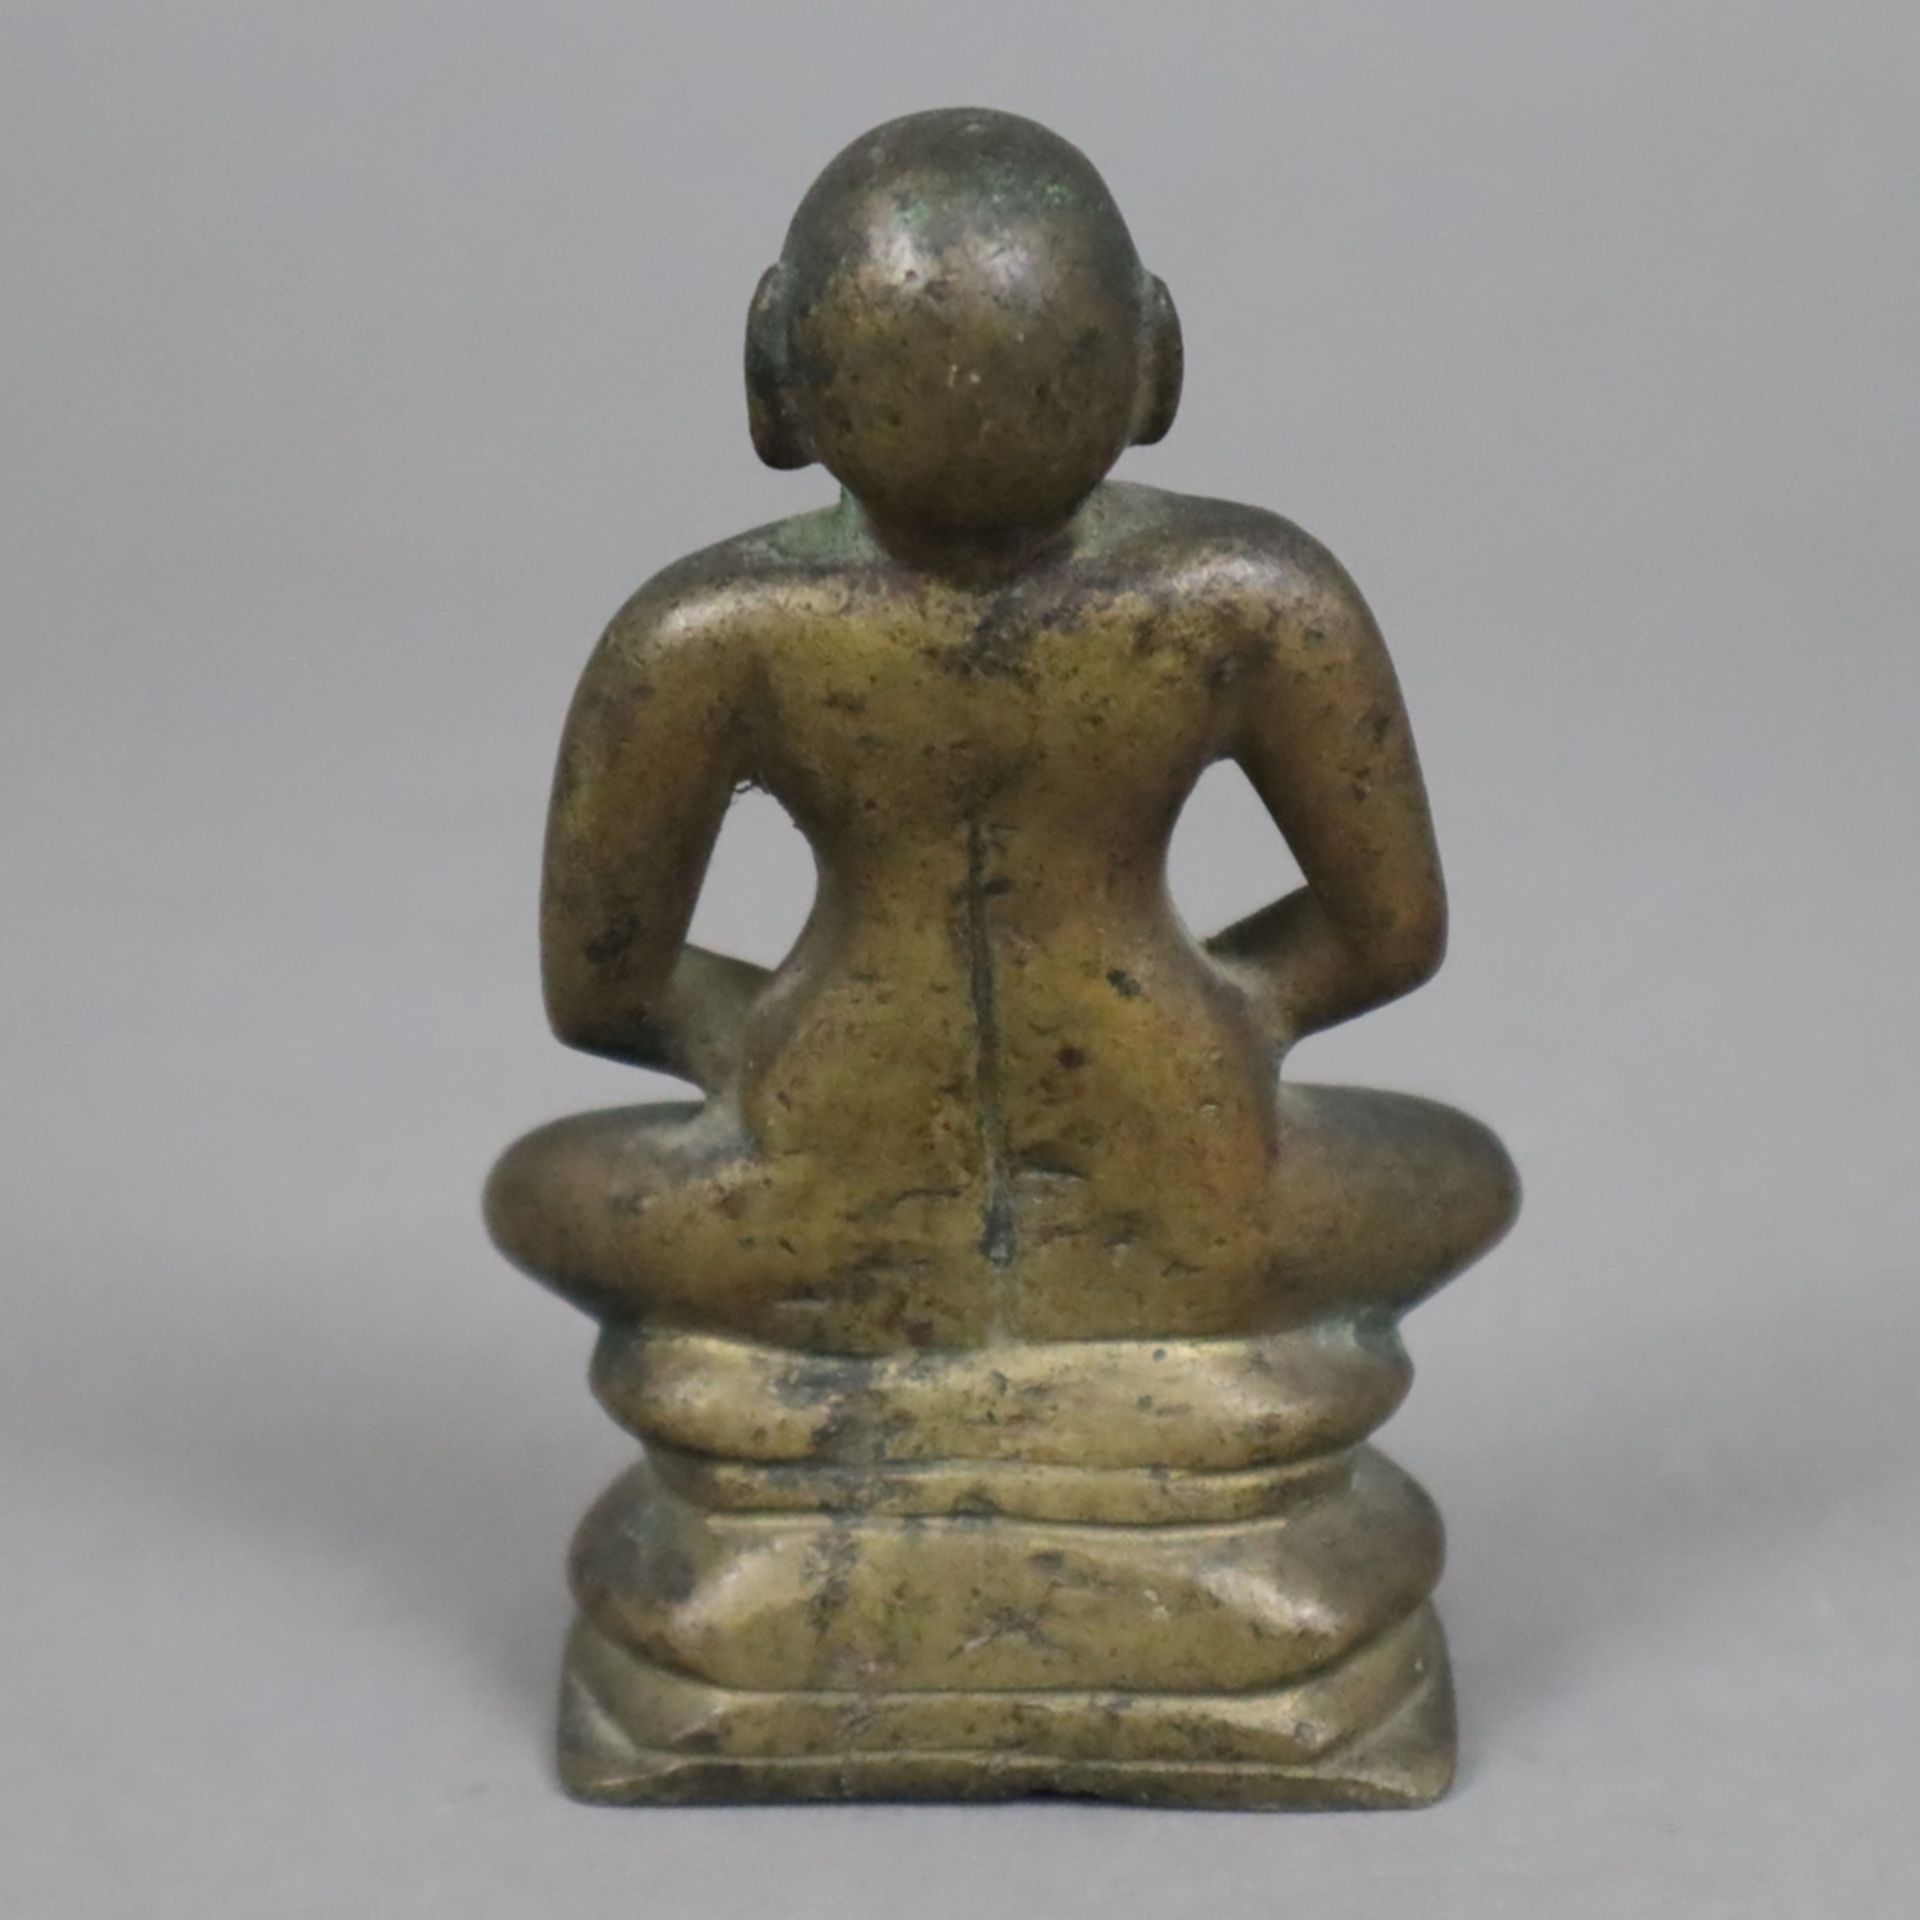 Erleuchteter asketischer Mönch/ Buddha in Meditation - Indien, 19. Jh., Bronzefigur, H. ca. 9,5 cm, - Bild 5 aus 6